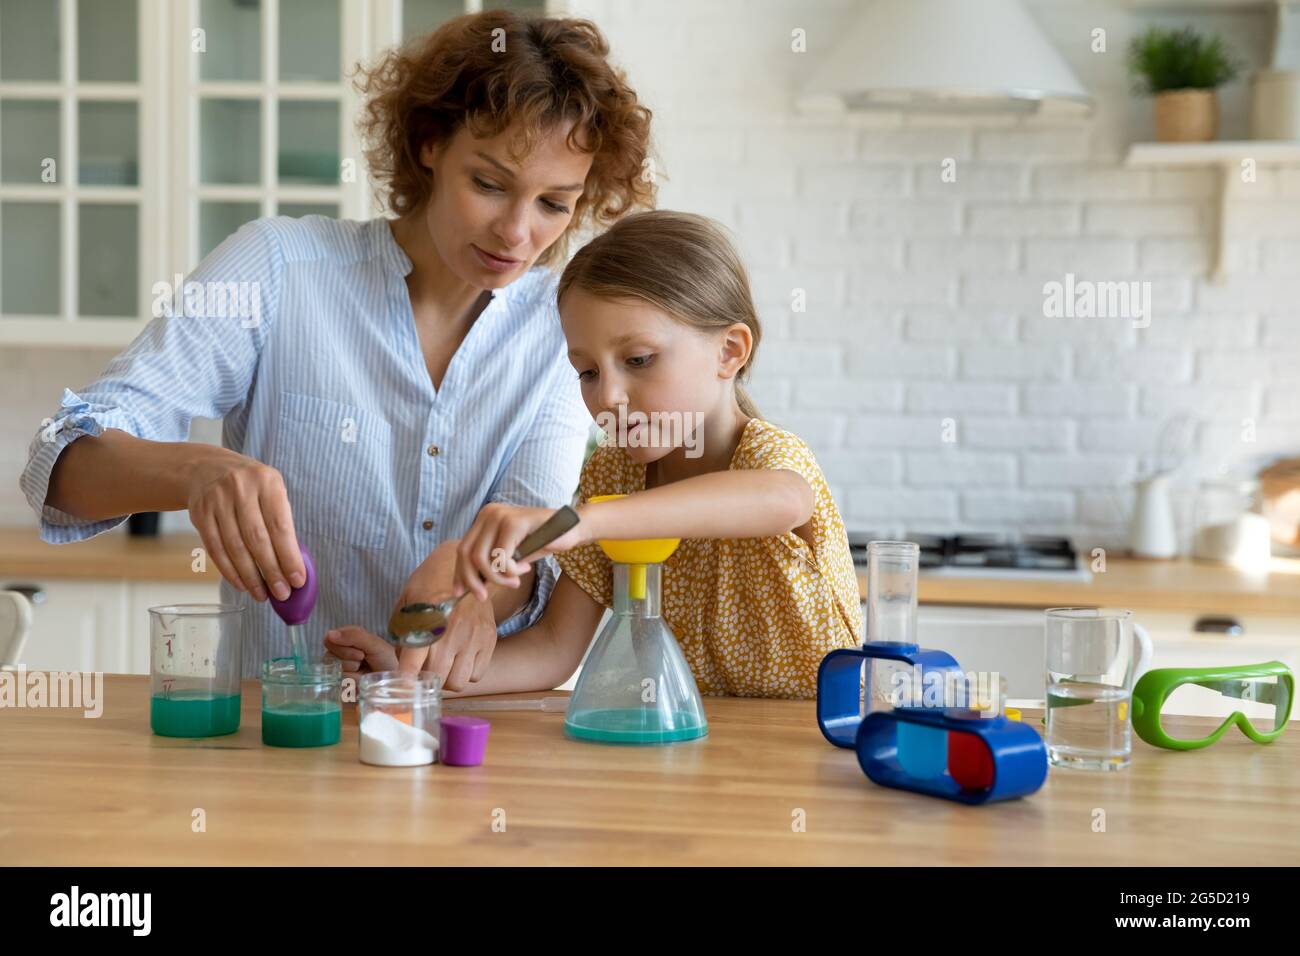 Une jeune mère attentionnée enseignant une petite fille faisant des expériences de chimie. Banque D'Images